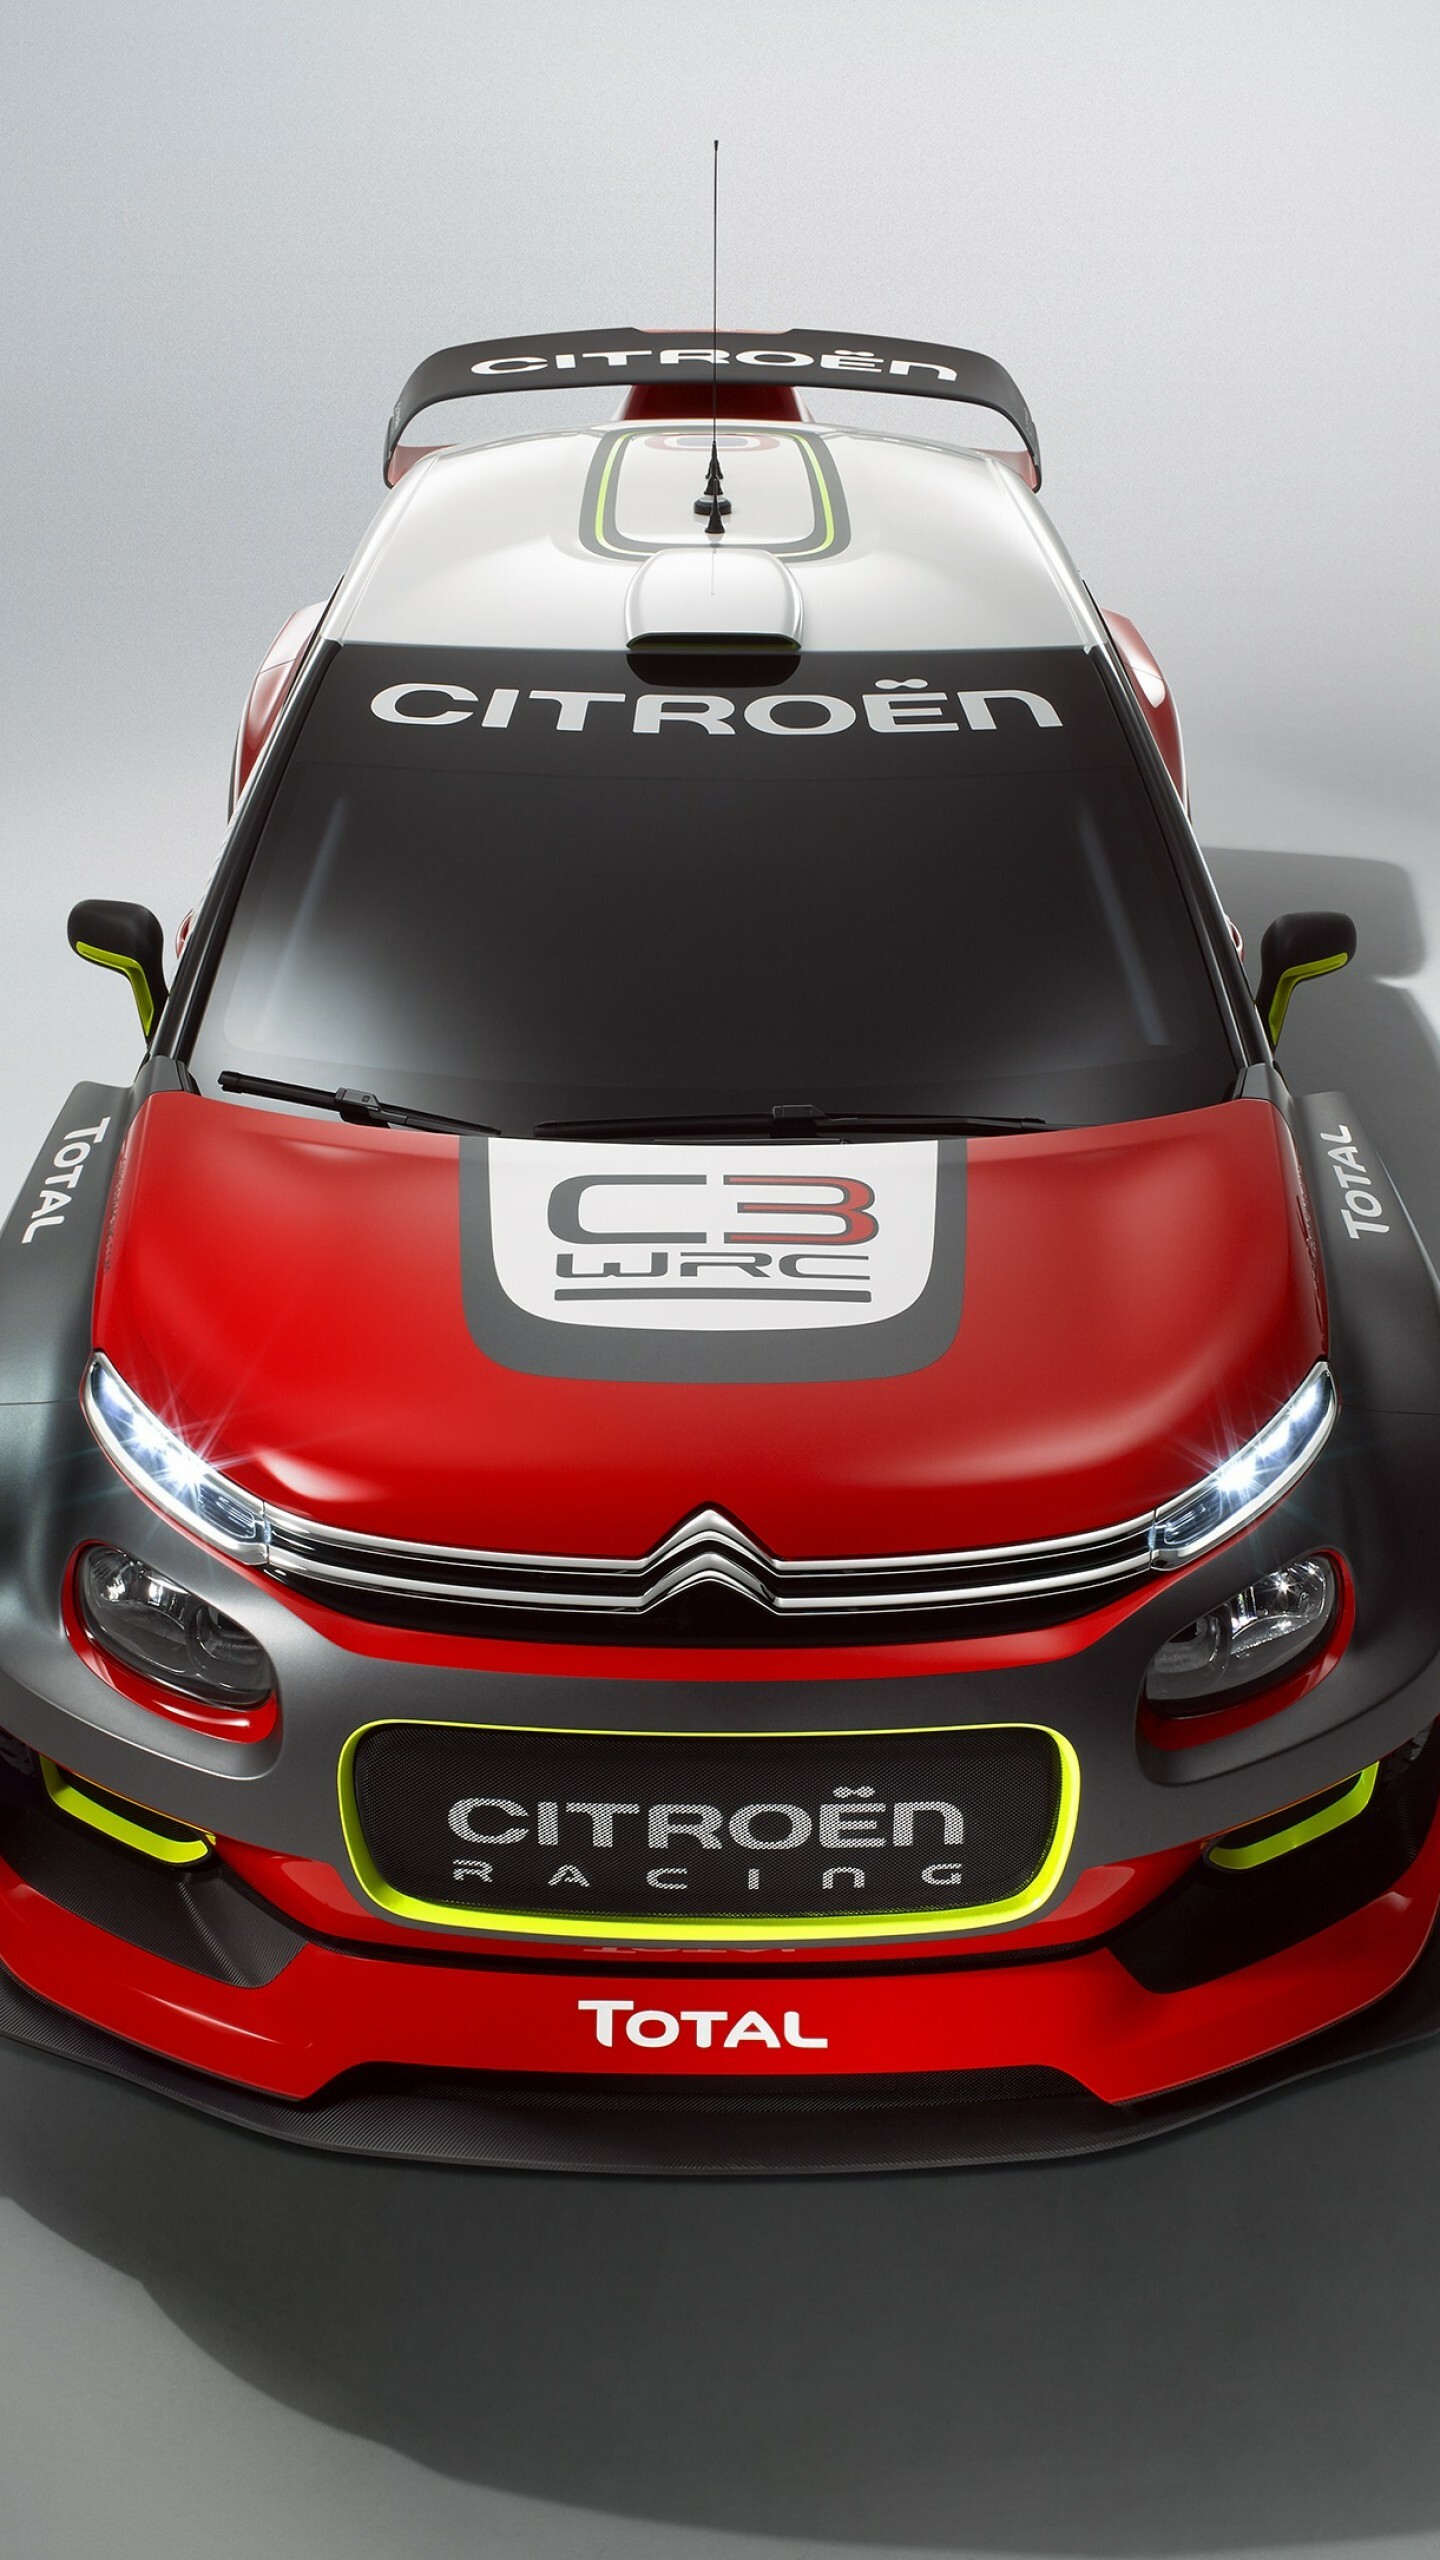 Citroen: Model C3 WRC, Paris auto show 2016, Rally cars. 1440x2560 HD Wallpaper.